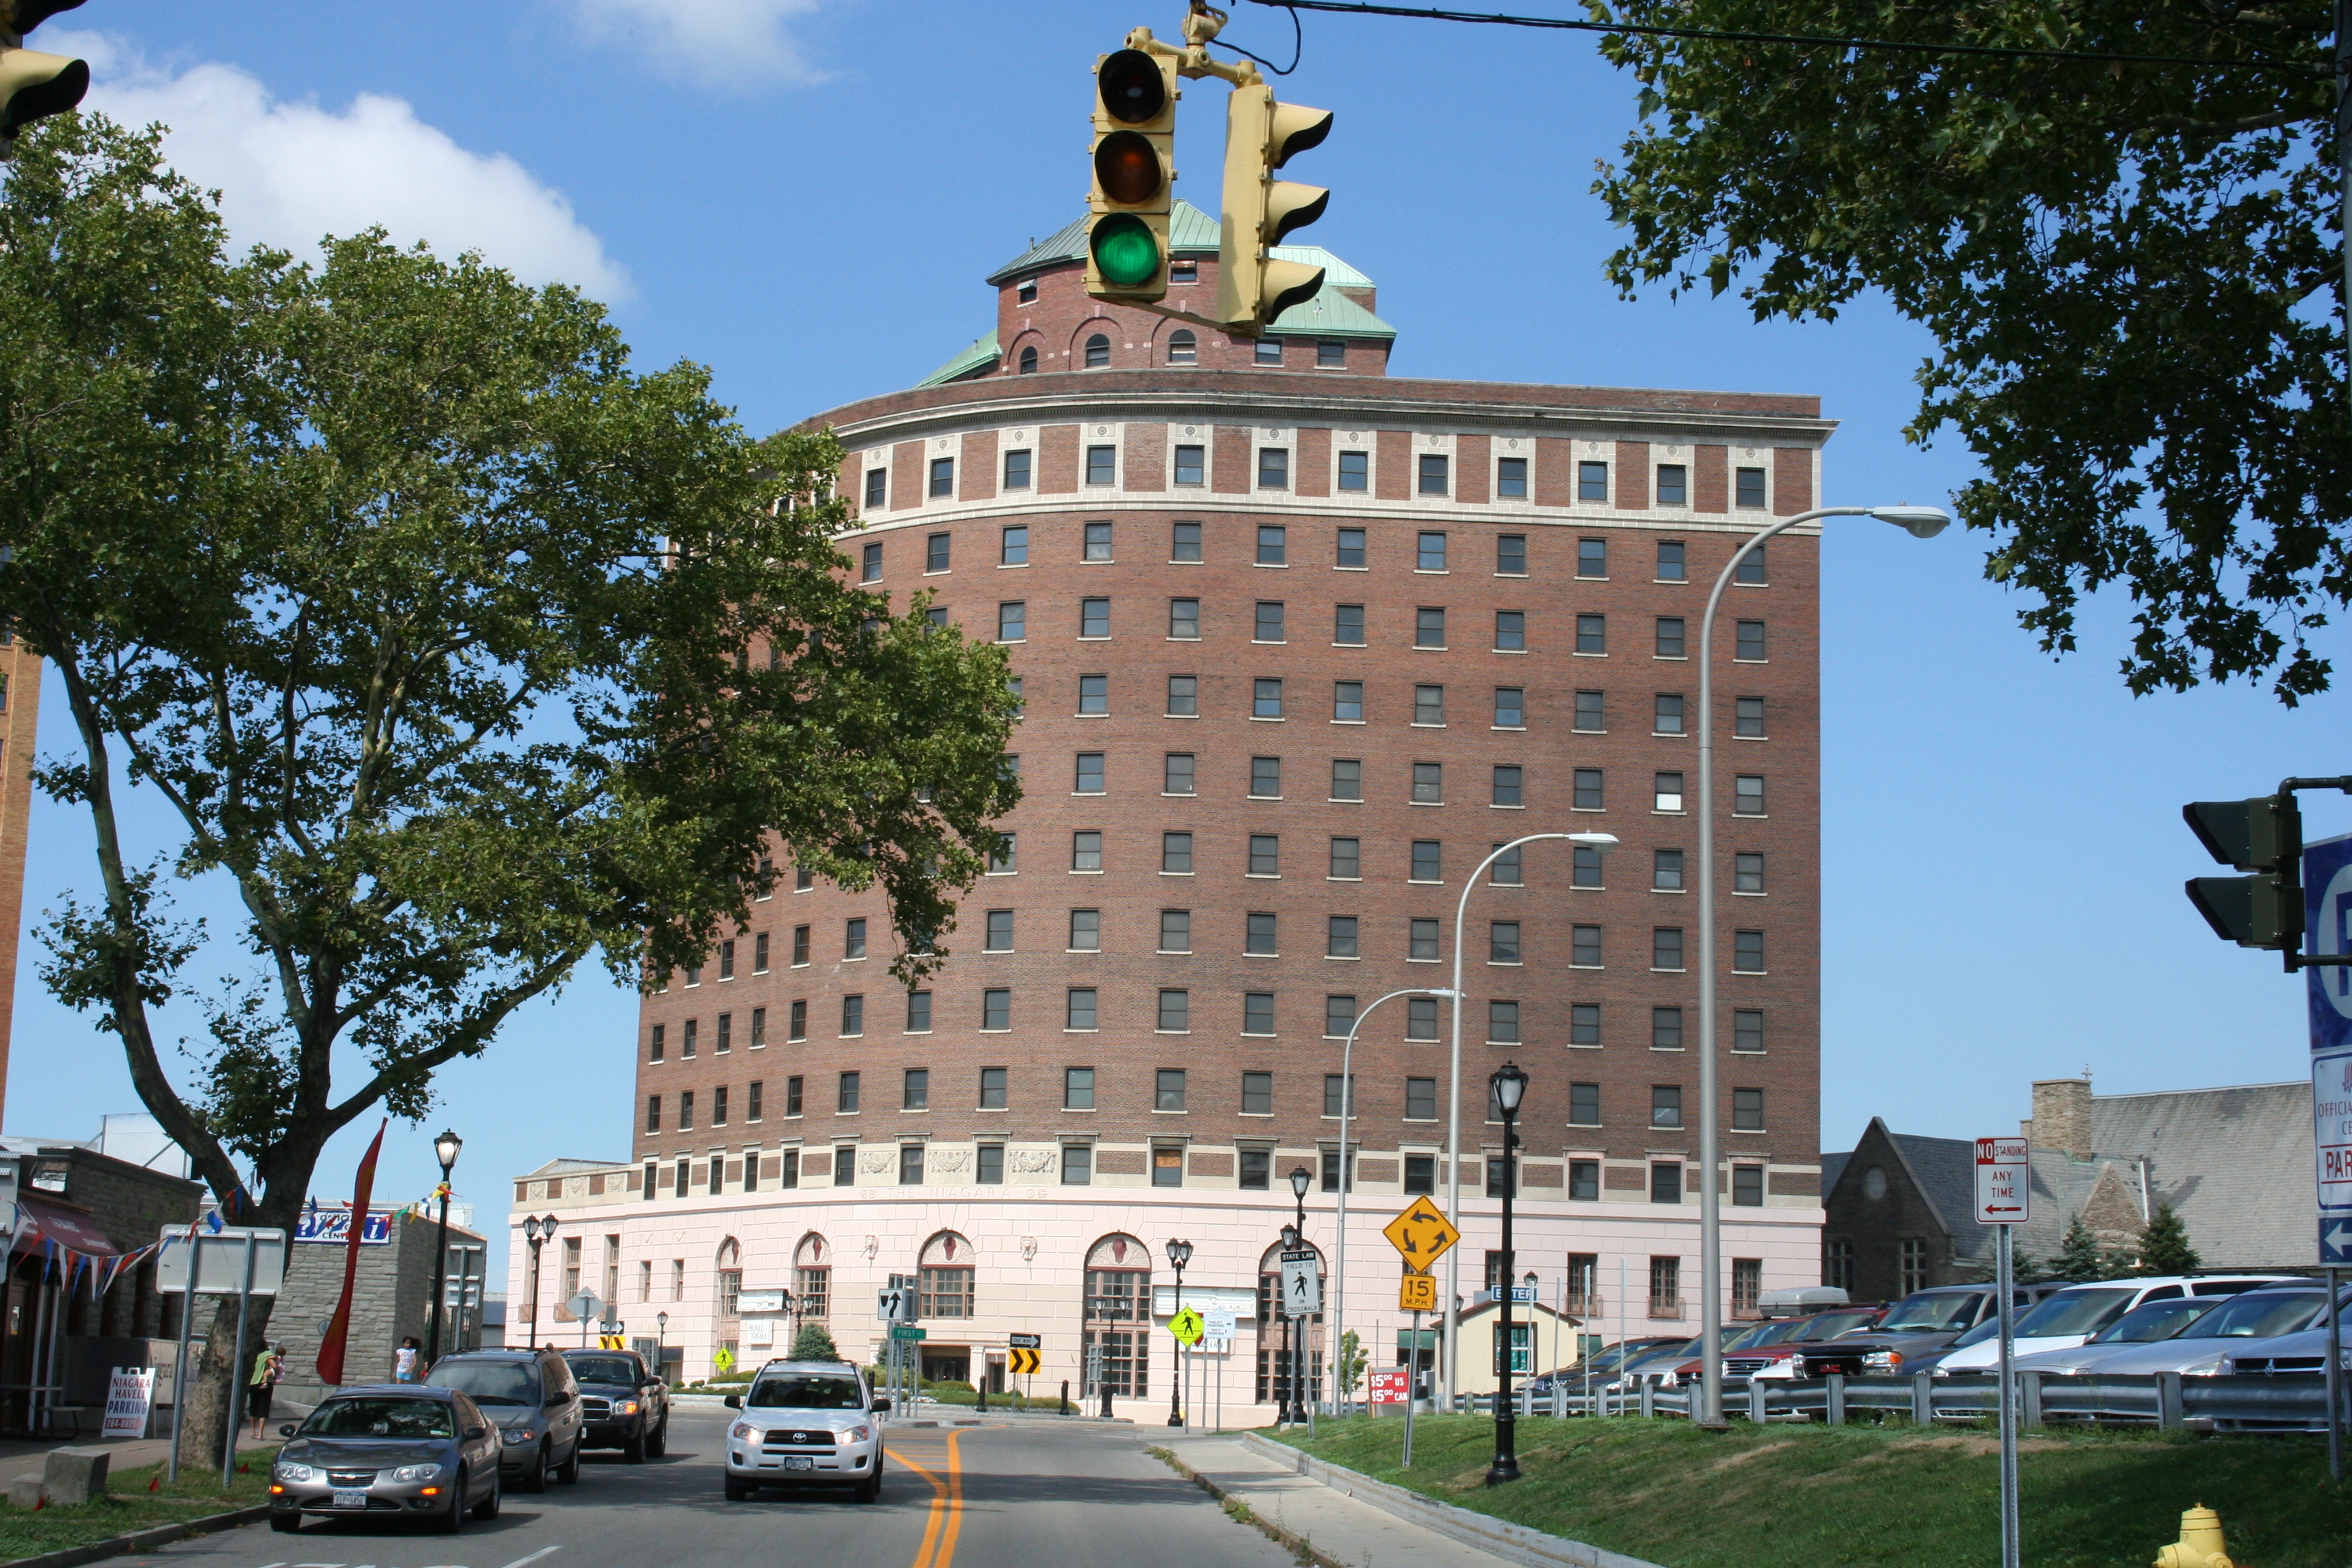 Hotel Niagara will go to Delaware North